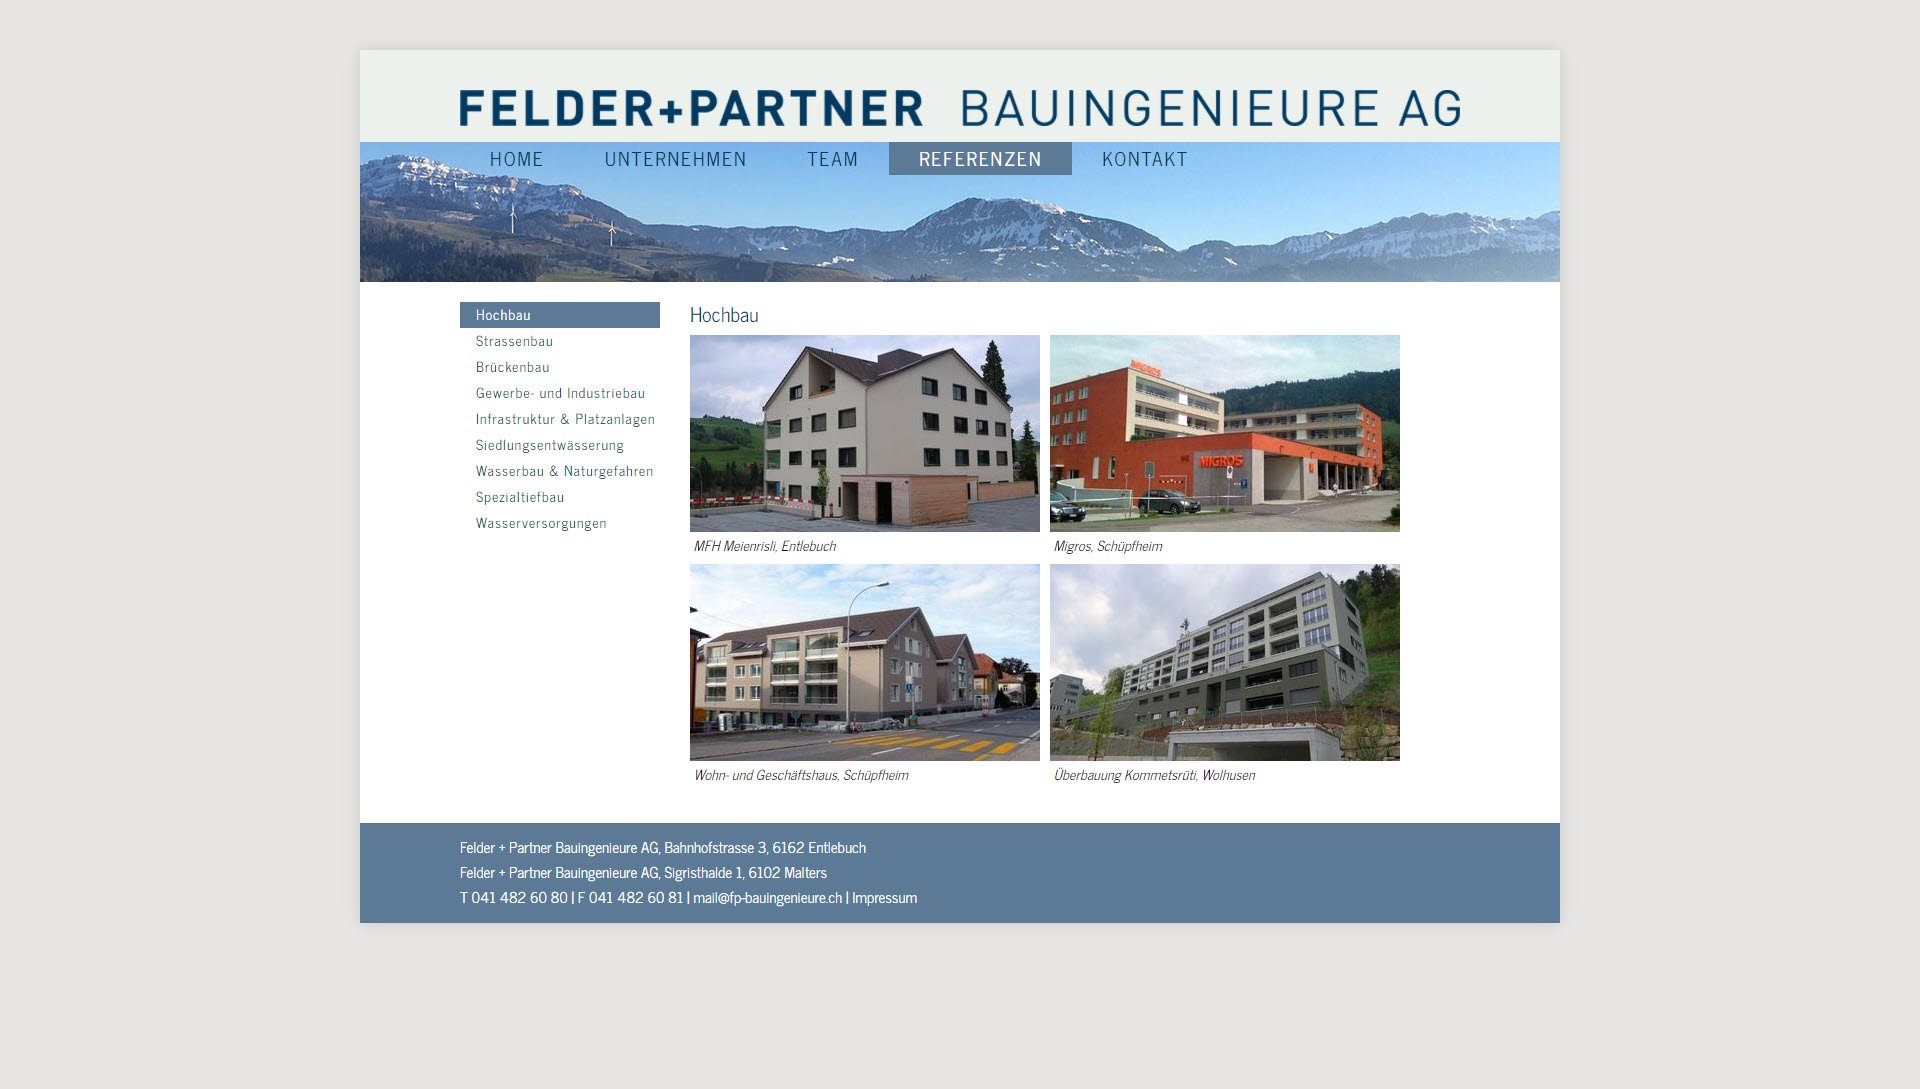 Federer & Partner Bauingenieure AG